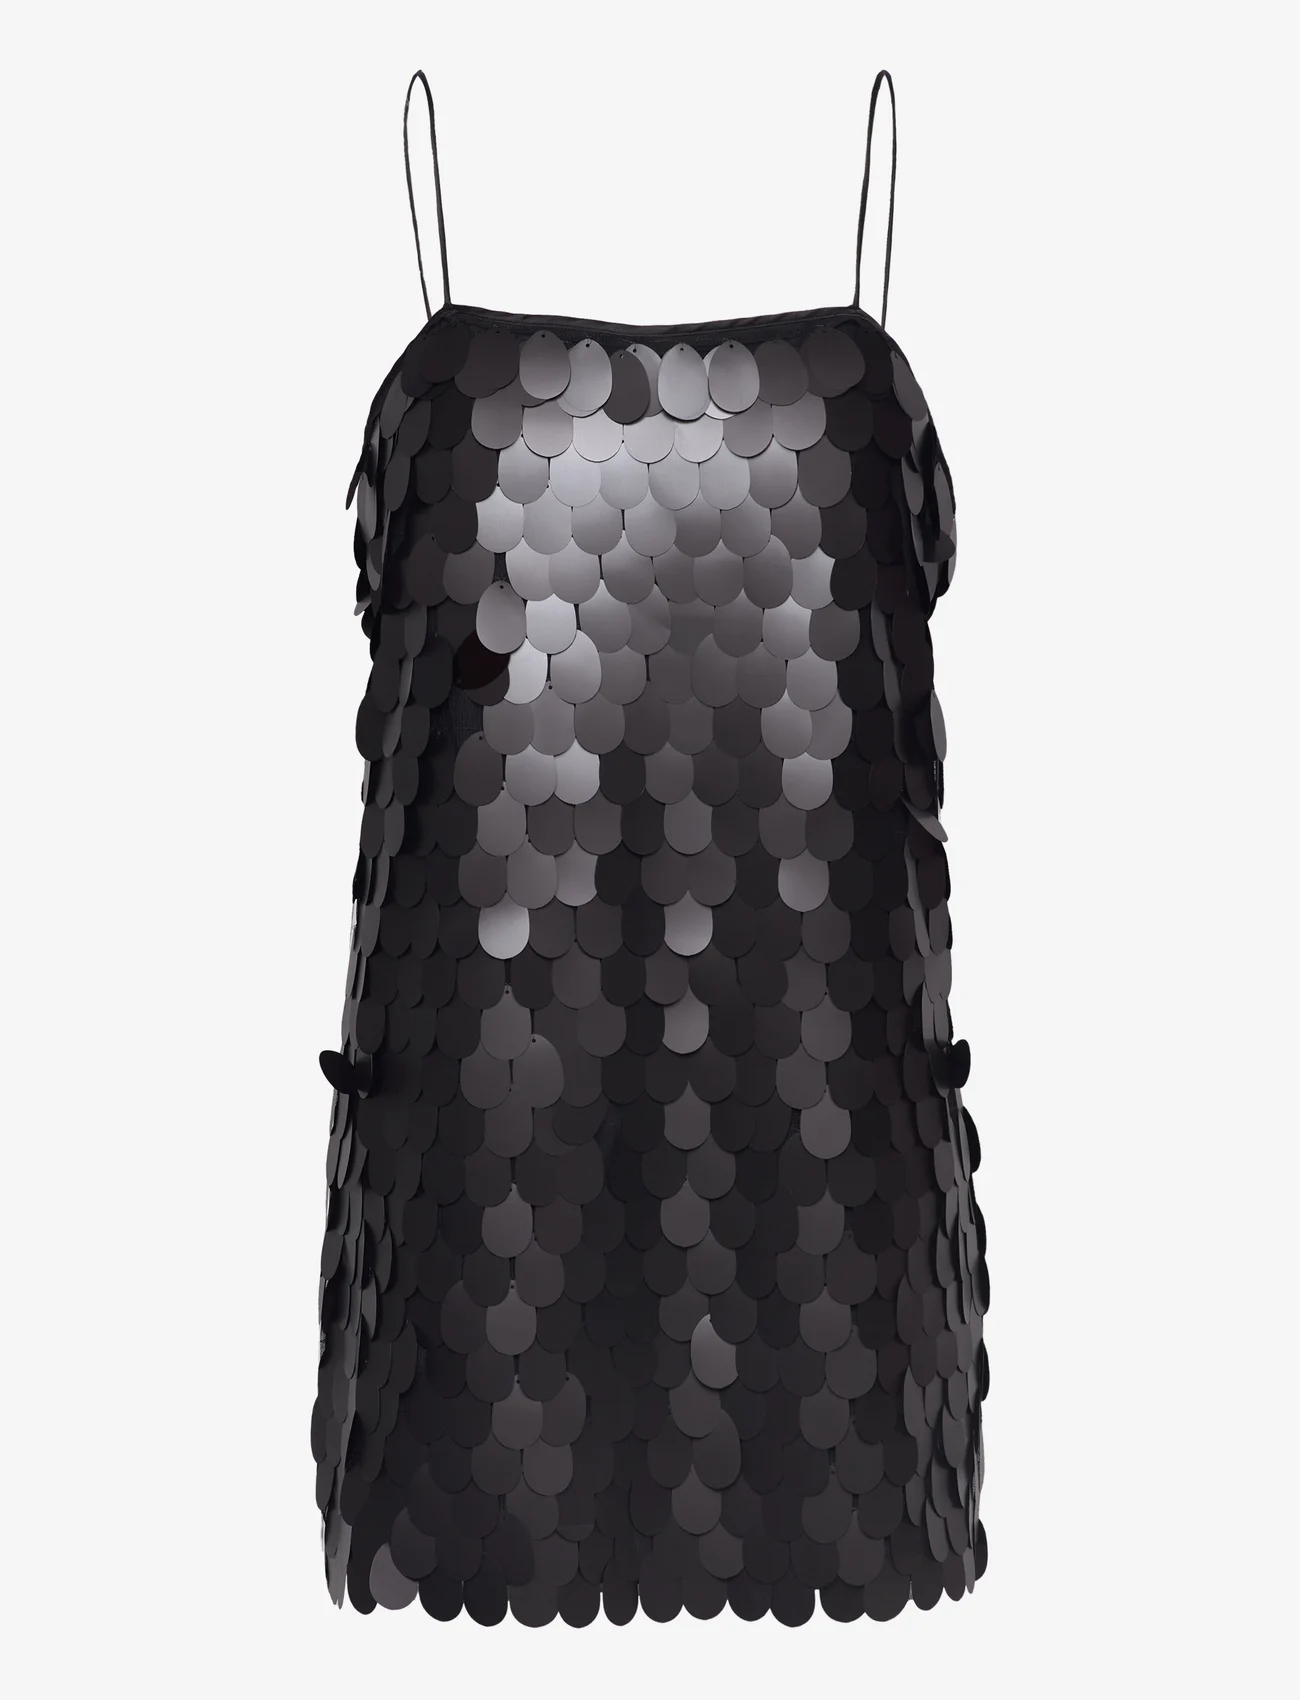 ROTATE Birger Christensen - Sequins Mini Slip Dress - schlupfkleider - black - 0